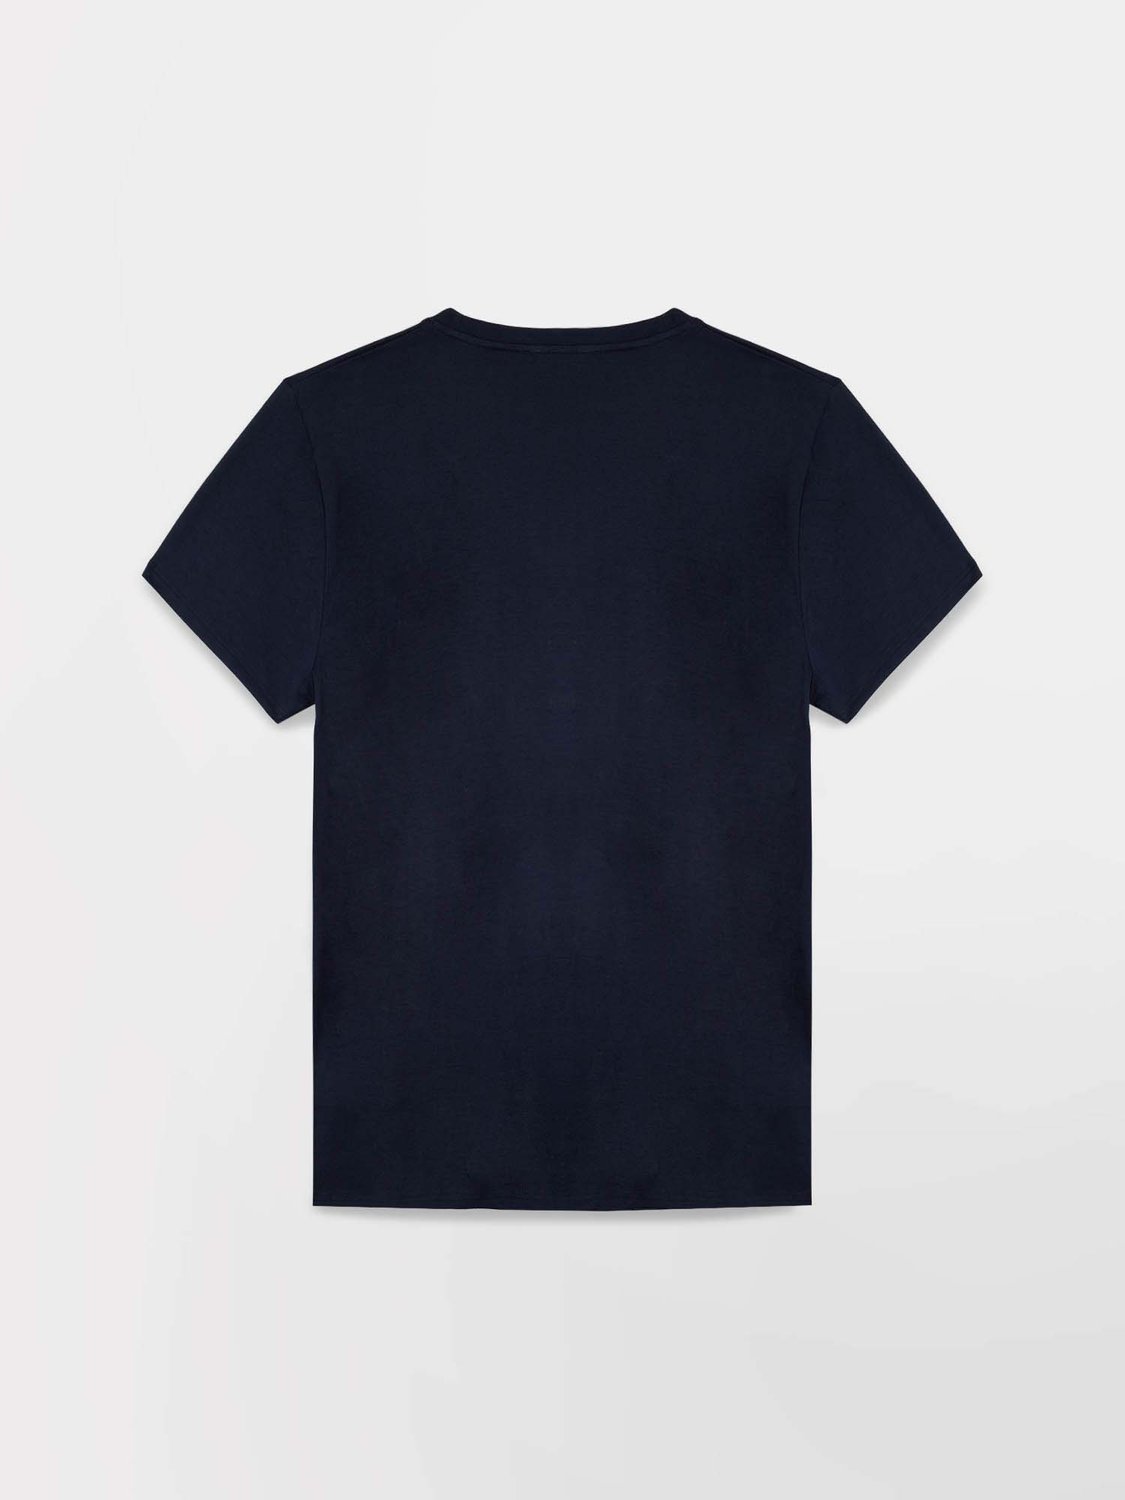 Tee Shirt Homme Print Coloré Coton Biologique Marine